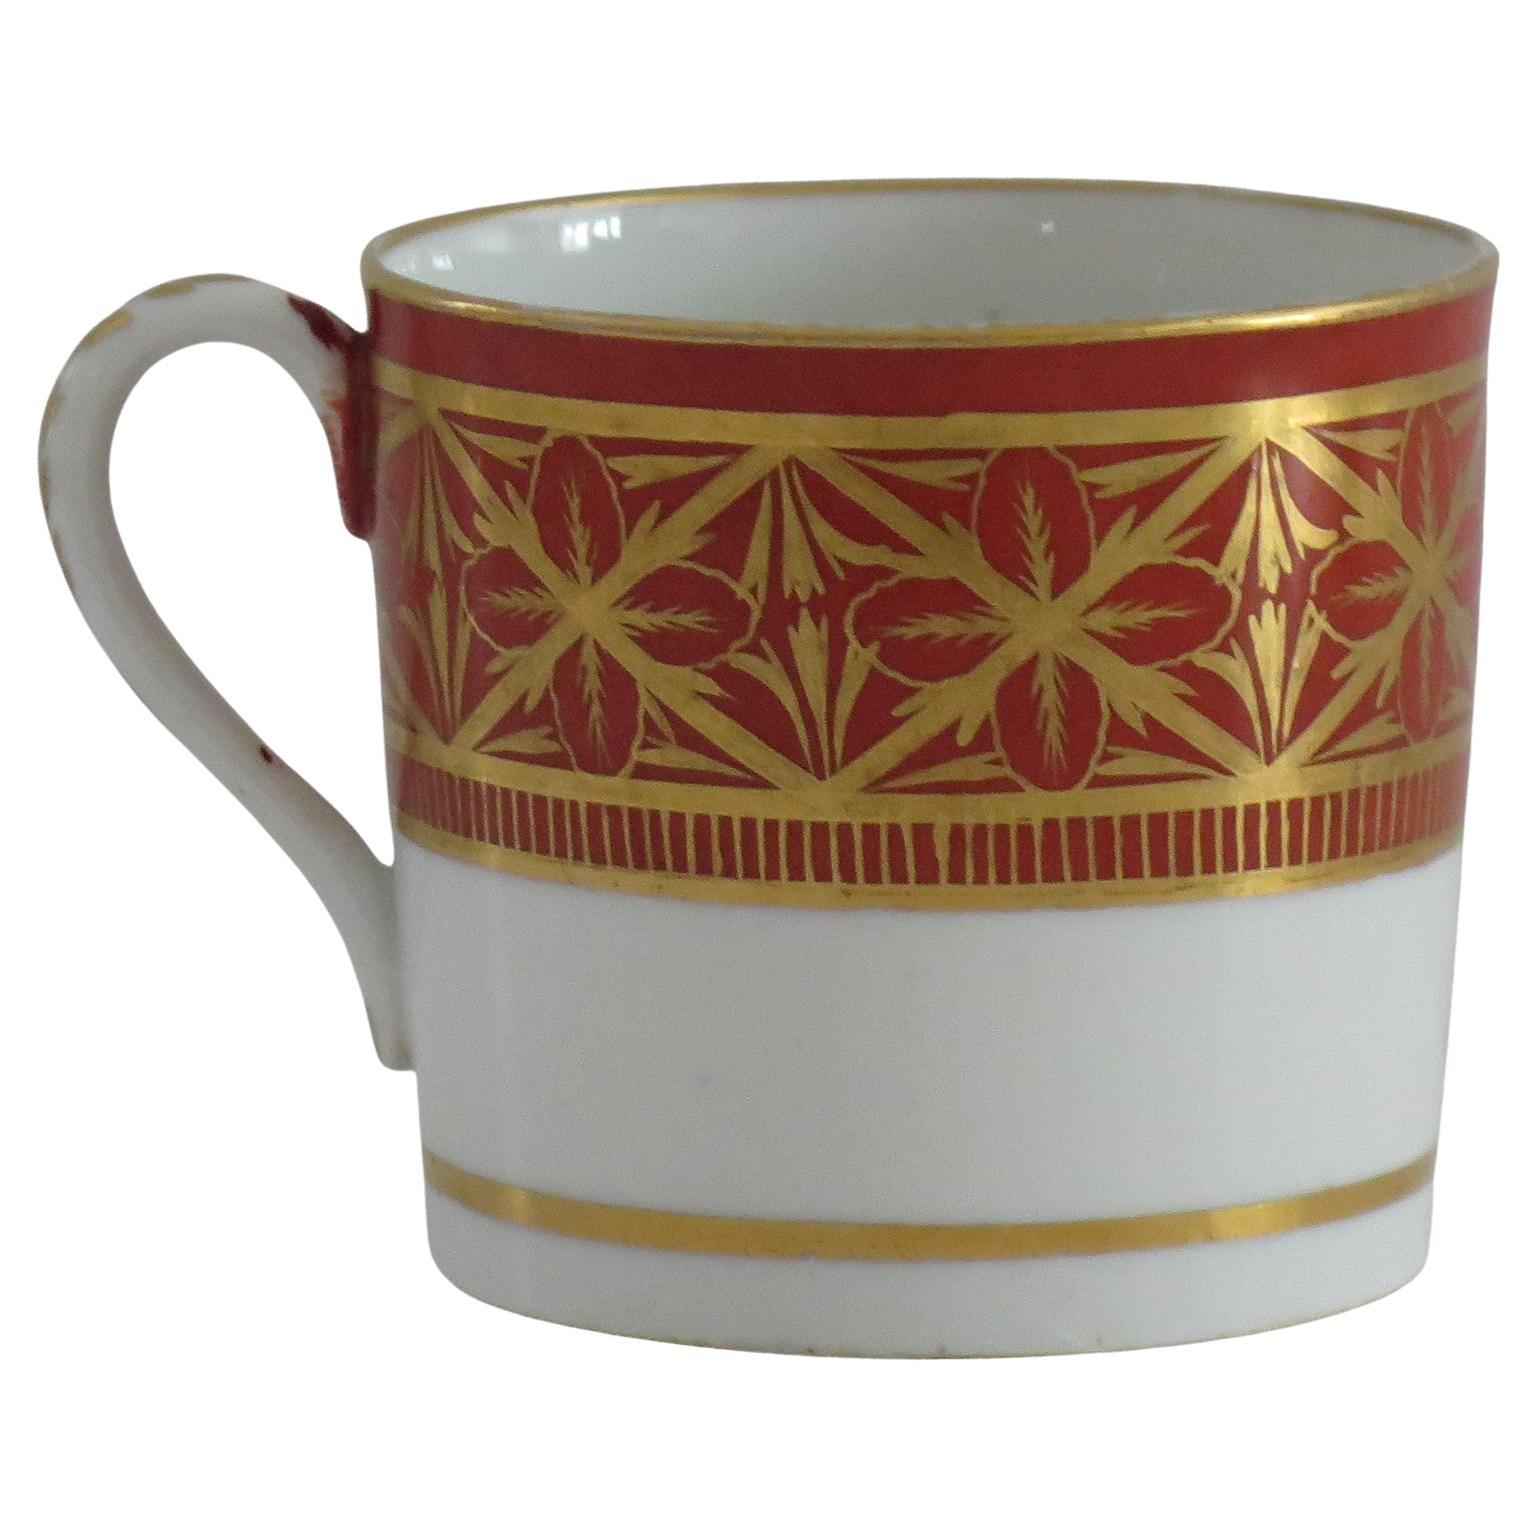 Canne à café en porcelaine de Coalport peinte à la main et à motif doré, vers 1810